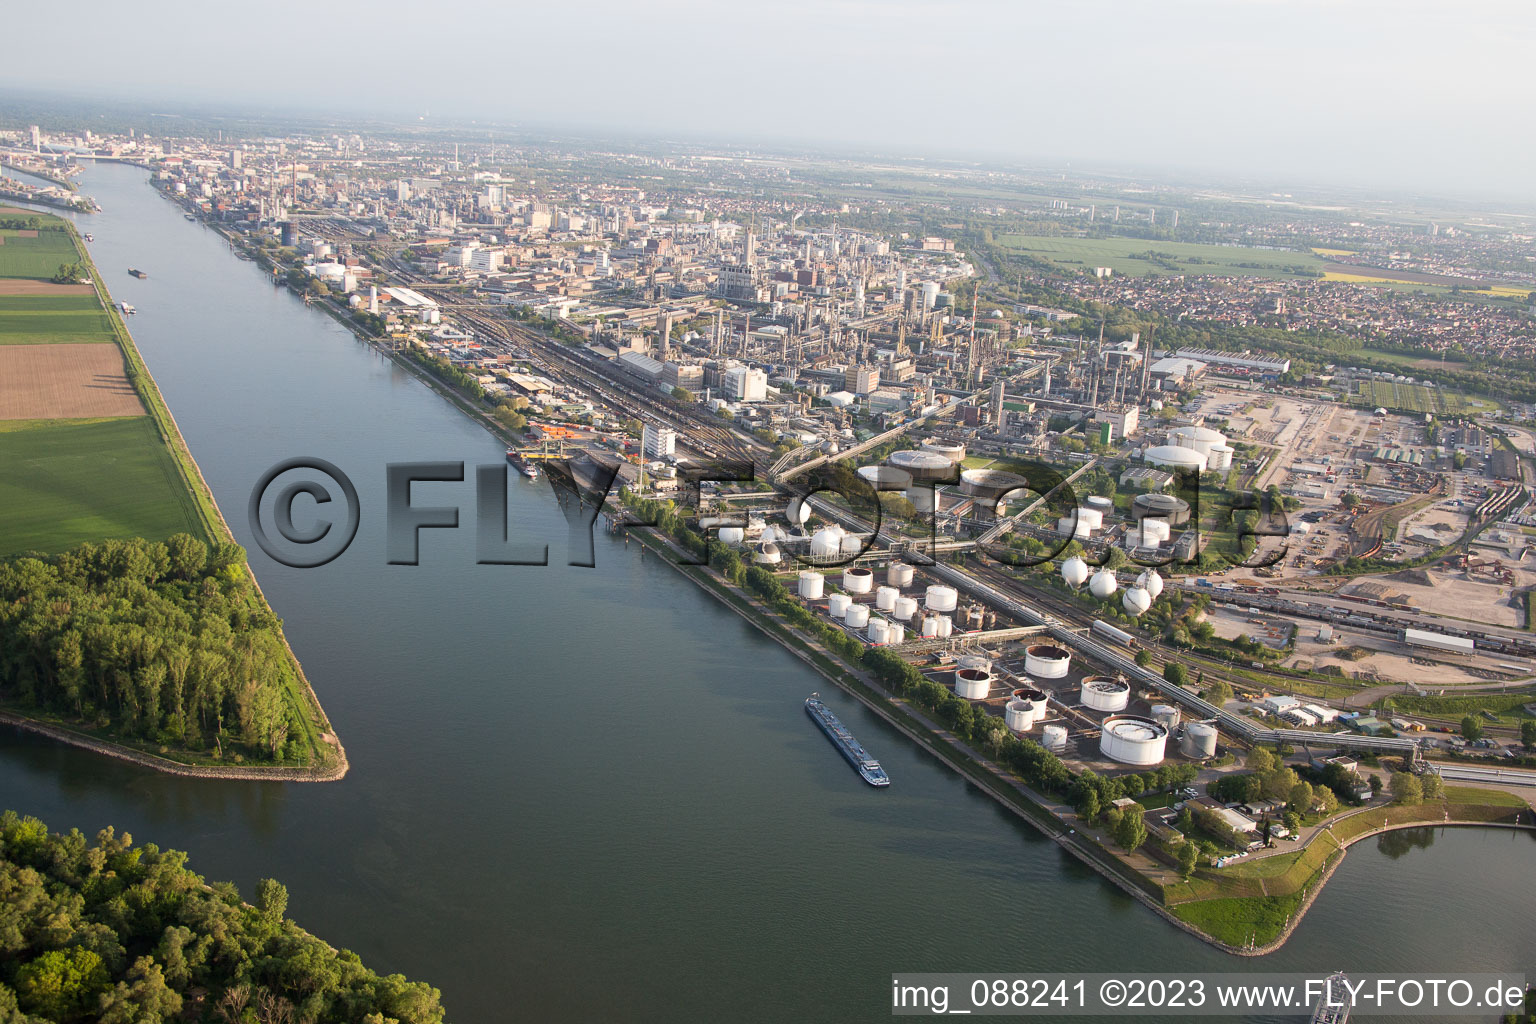 Luftbild von BASF am Landeshafen Nord in Ludwigshafen am Rhein im Bundesland Rheinland-Pfalz, Deutschland